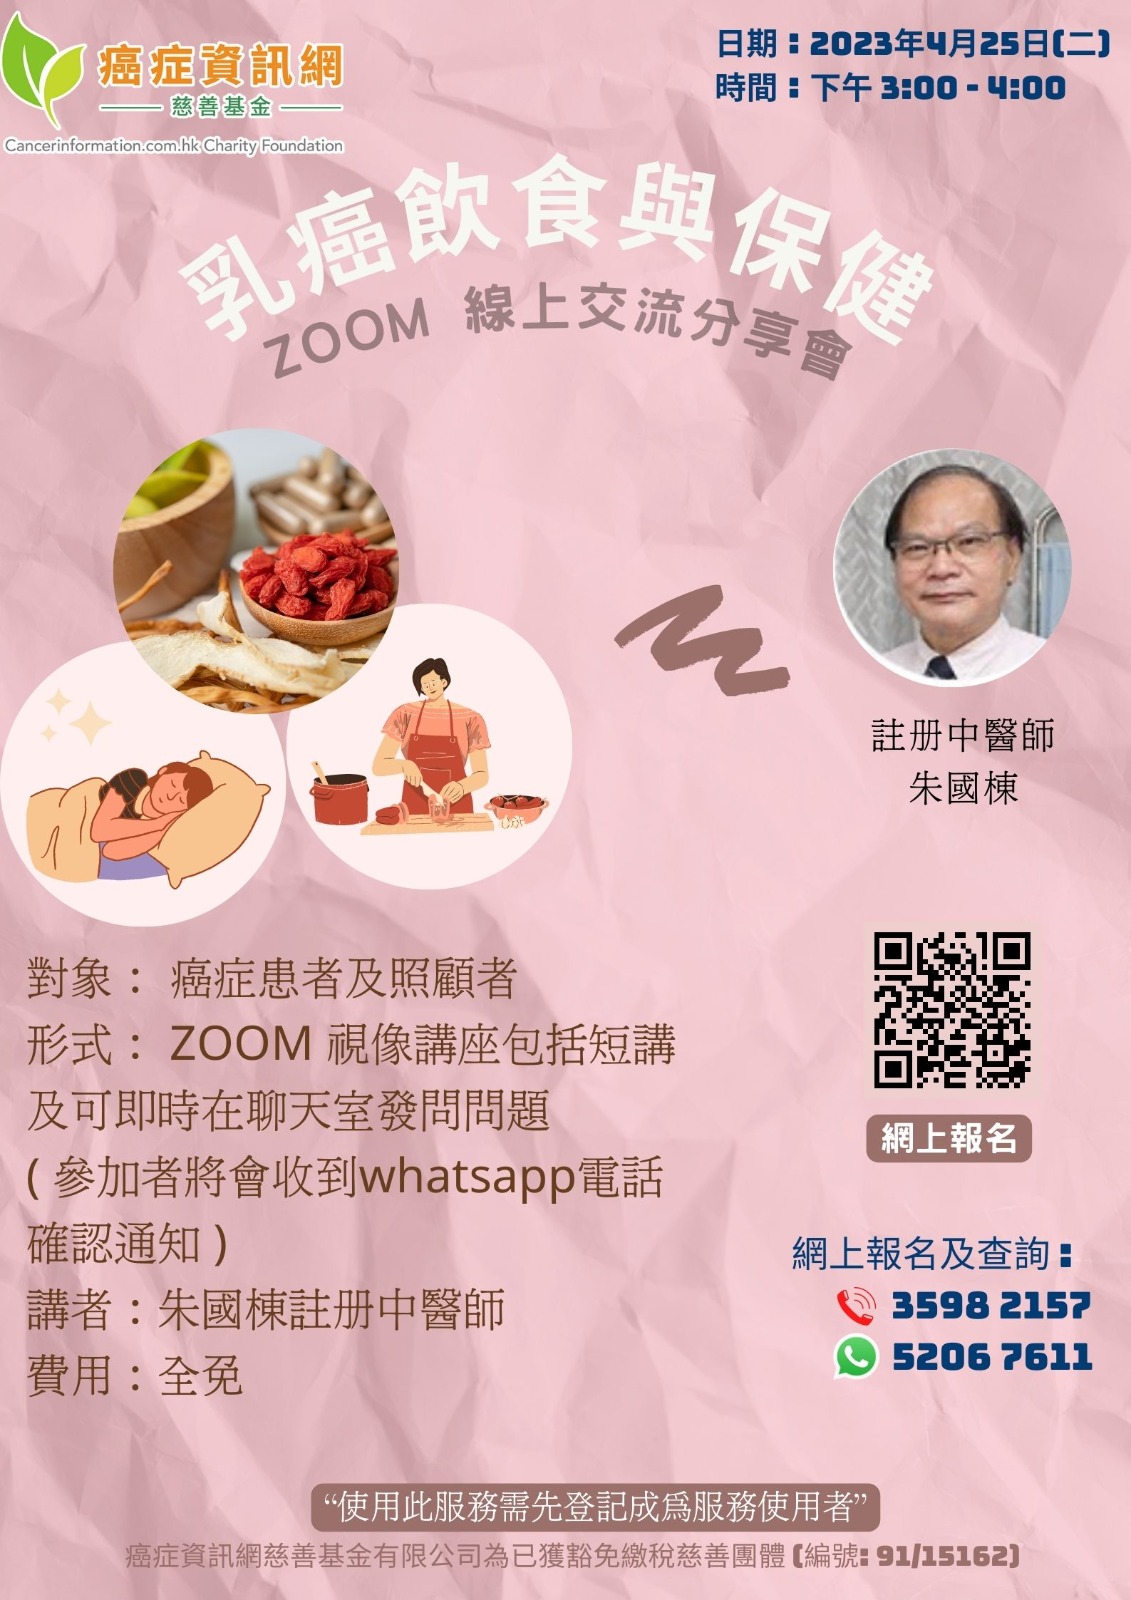 中醫網上講座~乳癌飲食與保健